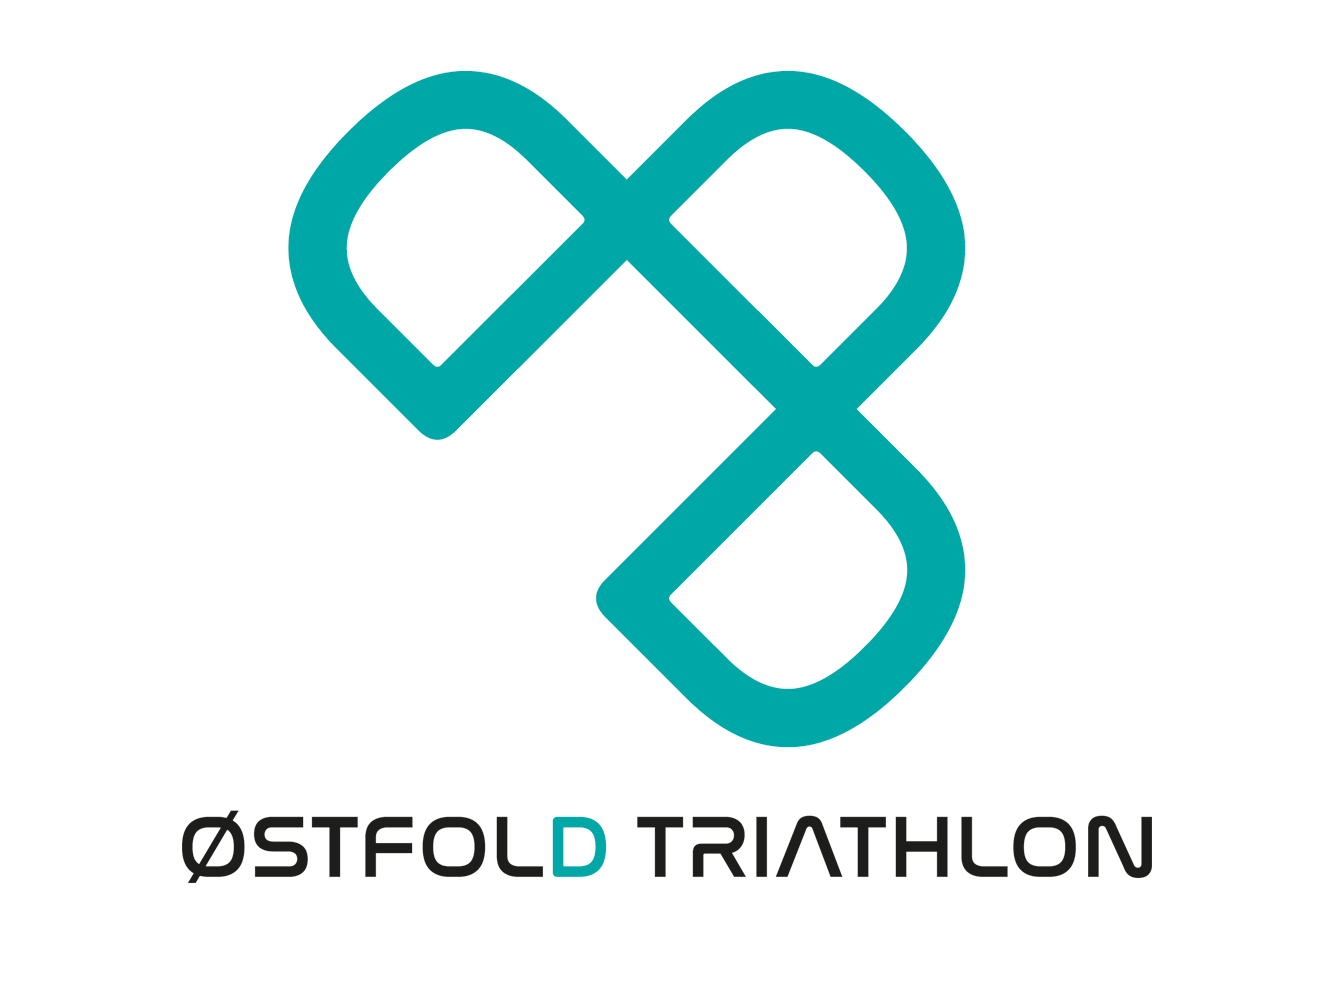 Østfold Triathlon